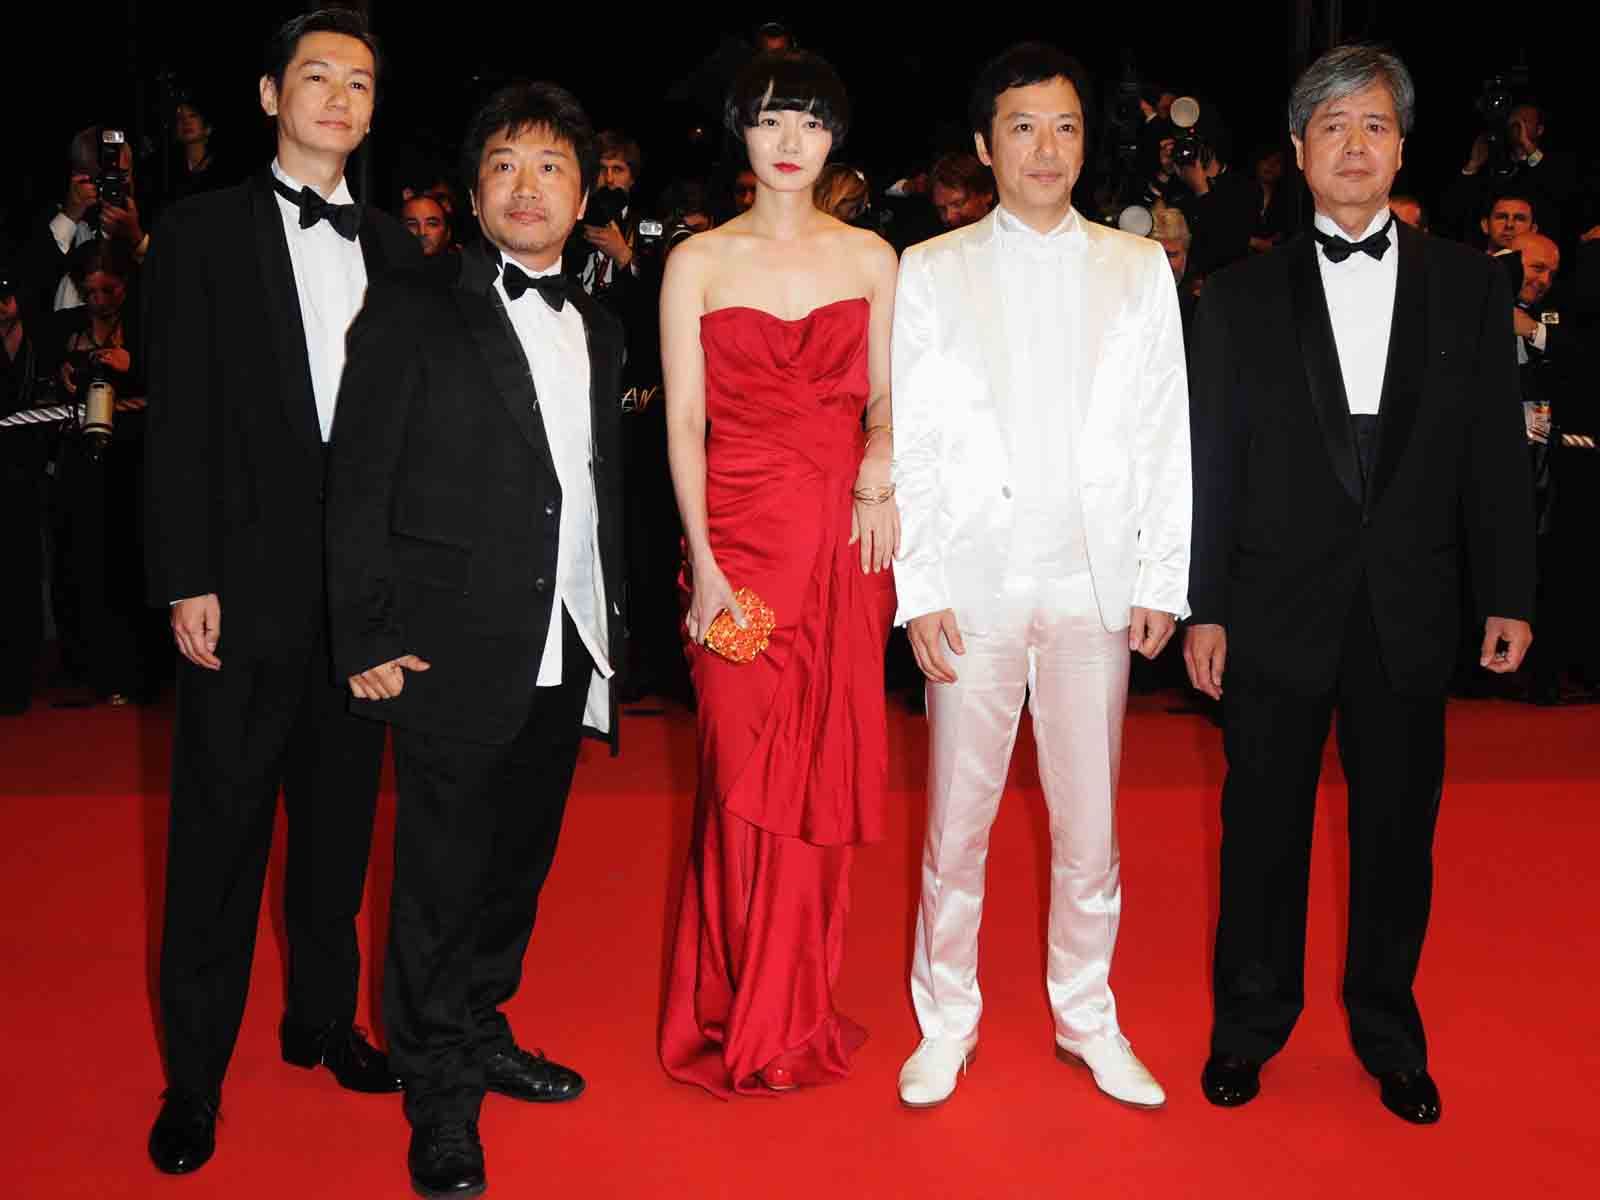 祝 是枝監督パルムドール受賞 カンヌ国際映画祭を彩った歴代日本人をプレイバック